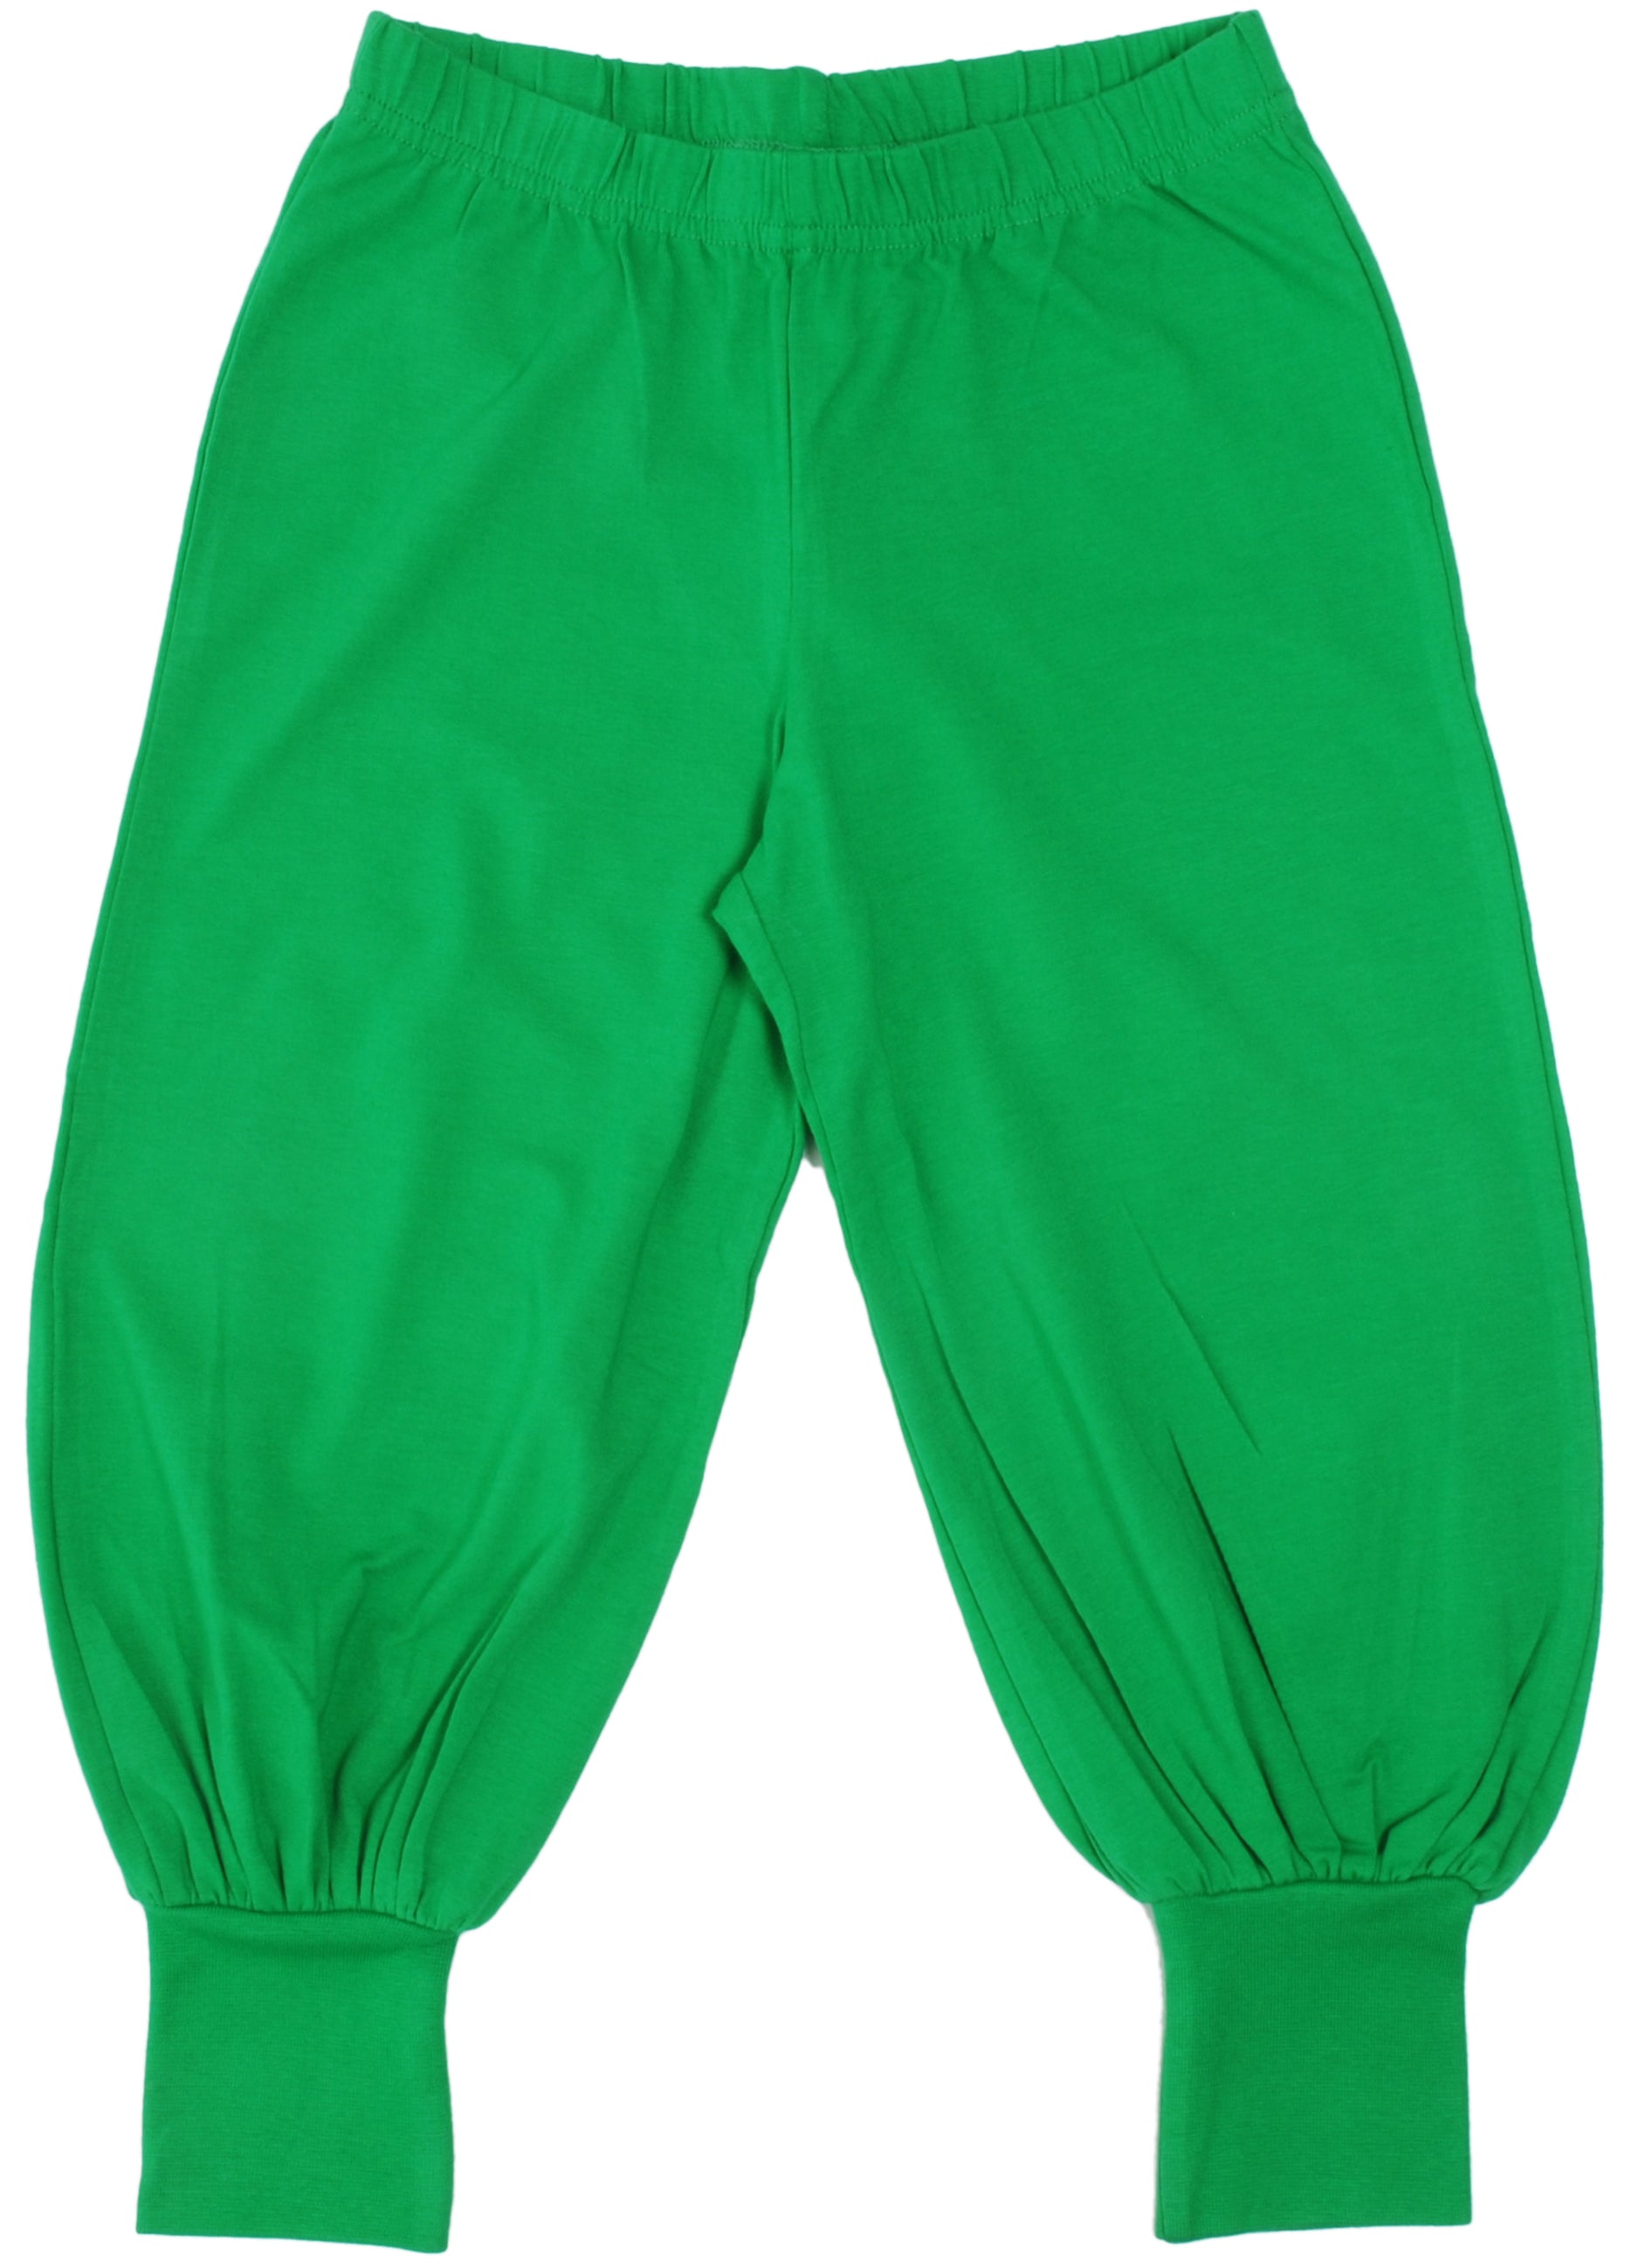 Broek / Baggy Pants MTAF Green - More than a Fling (Duns Sweden)